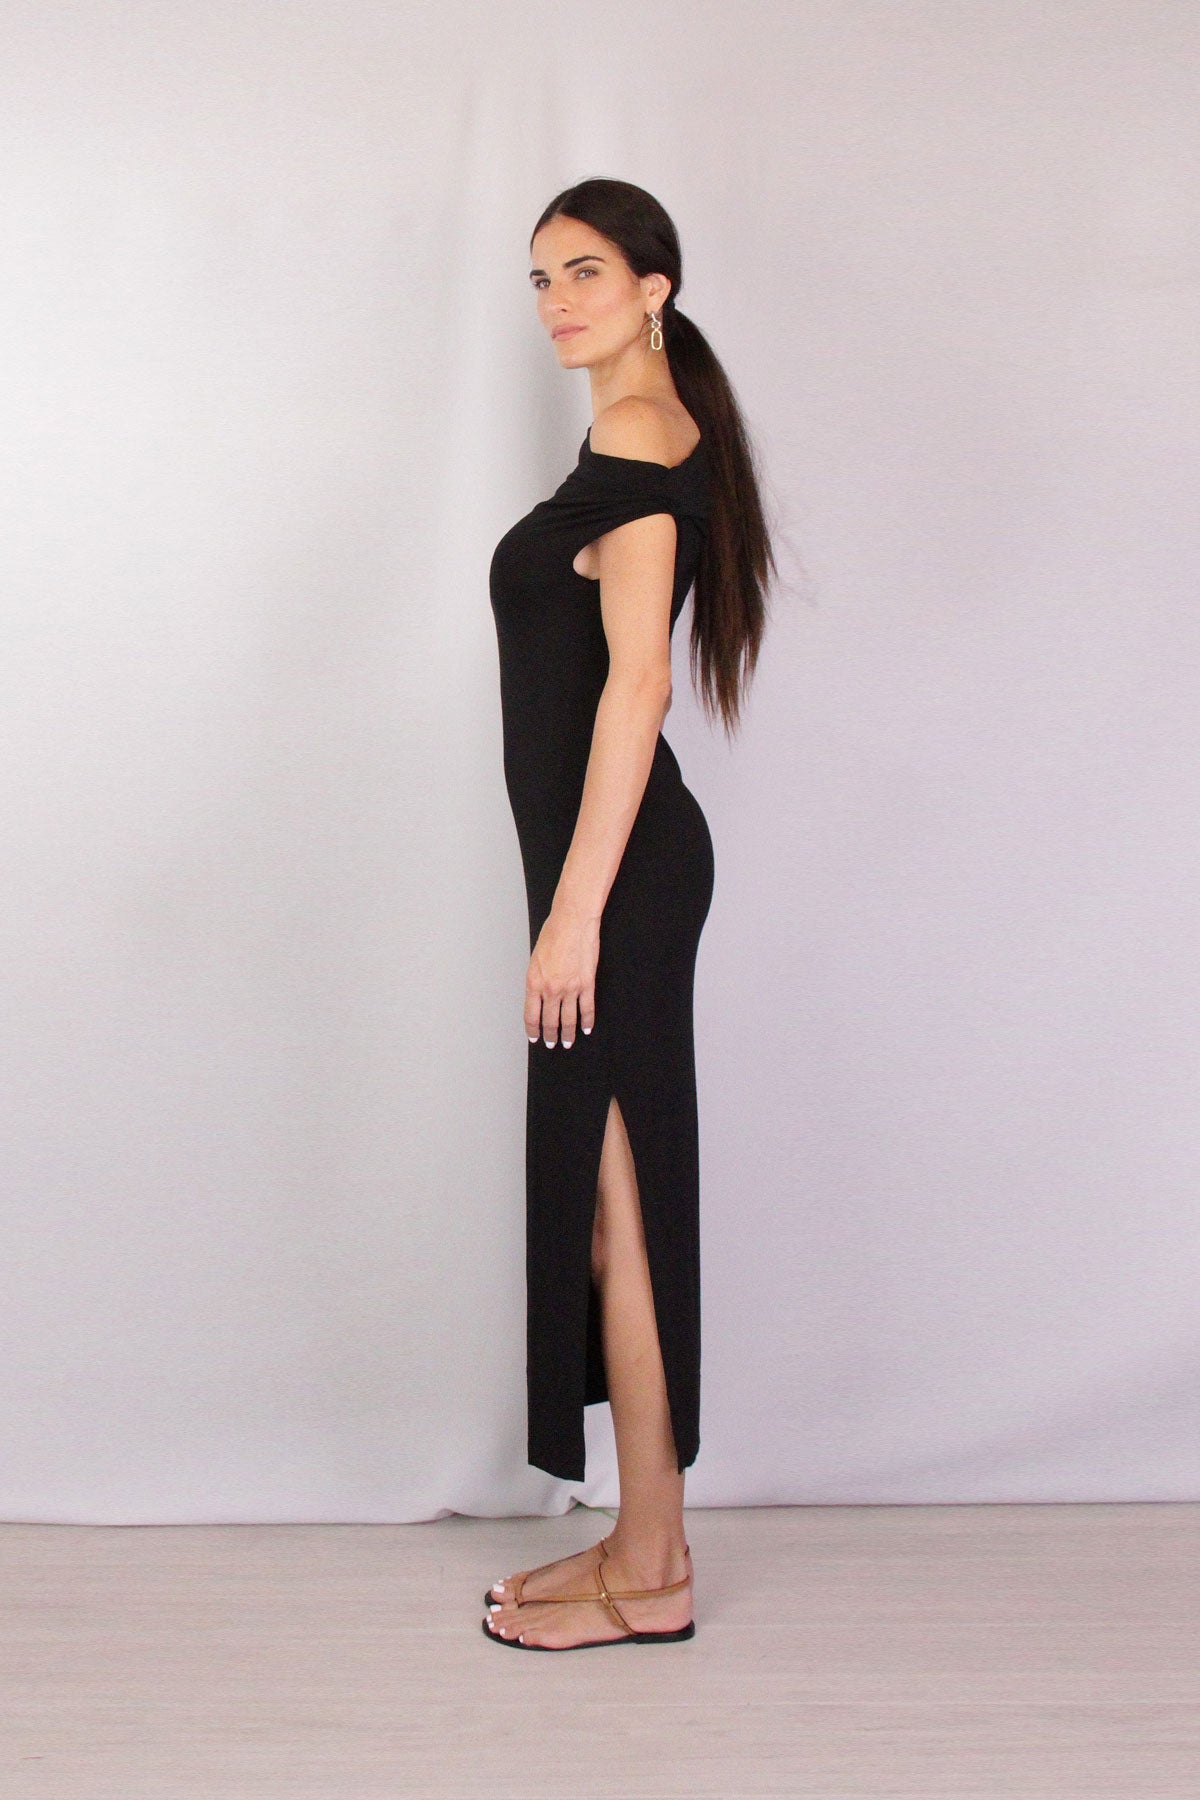 Exposed Shoulder Ankle Length Dress in Black - shop-olivia.com